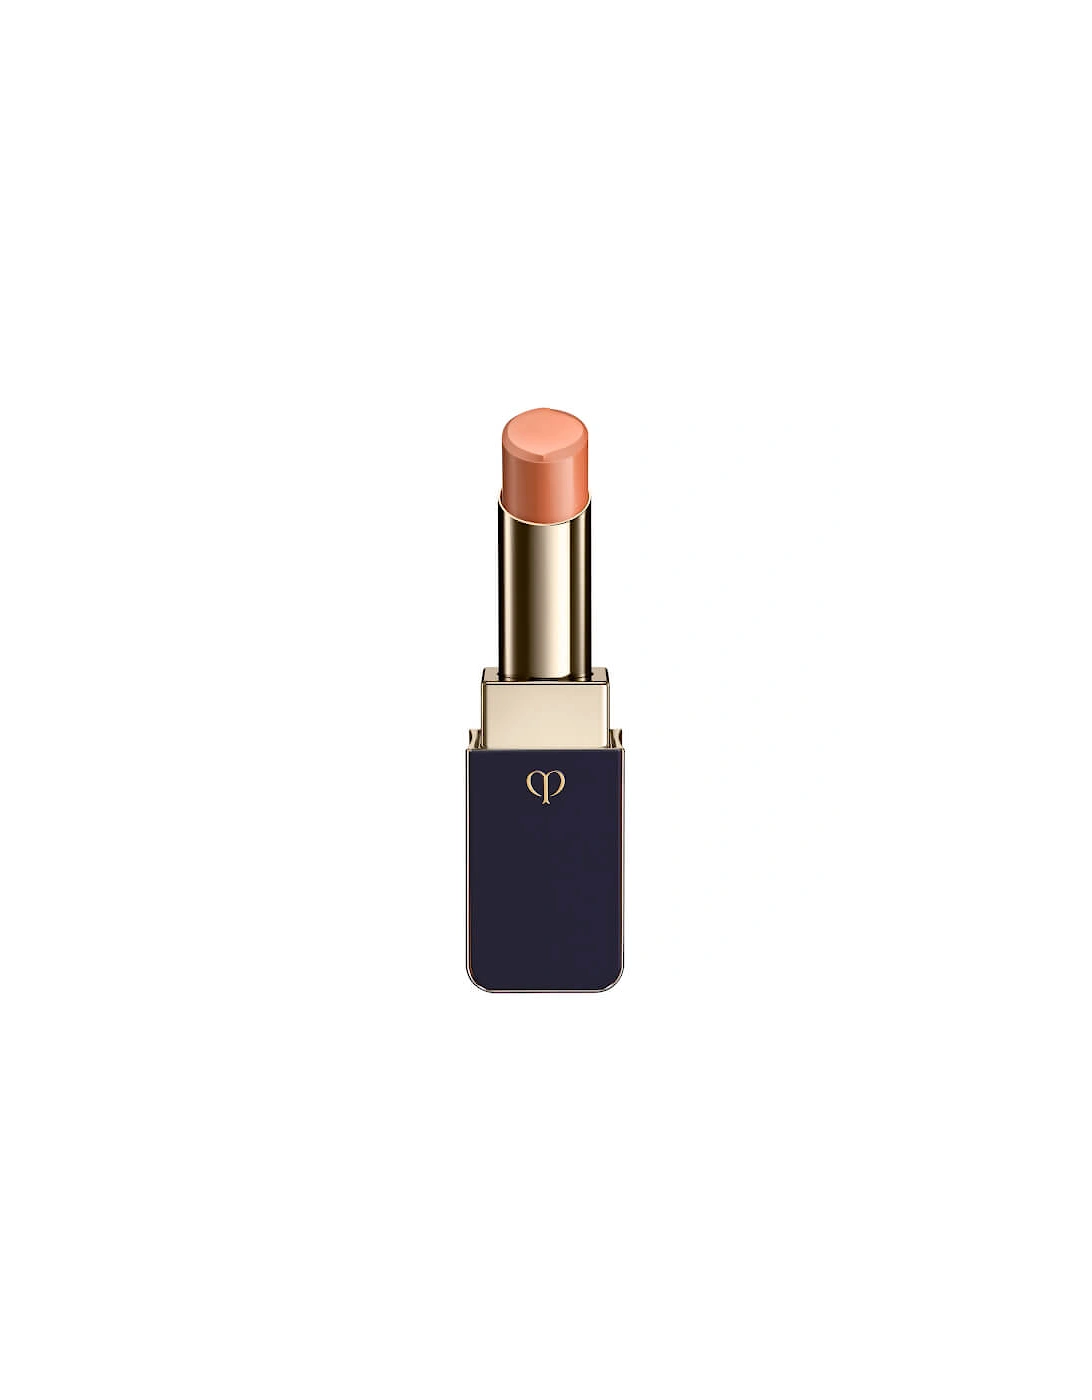 Clé de Peau Beauté Lipstick Shine - 216, 2 of 1